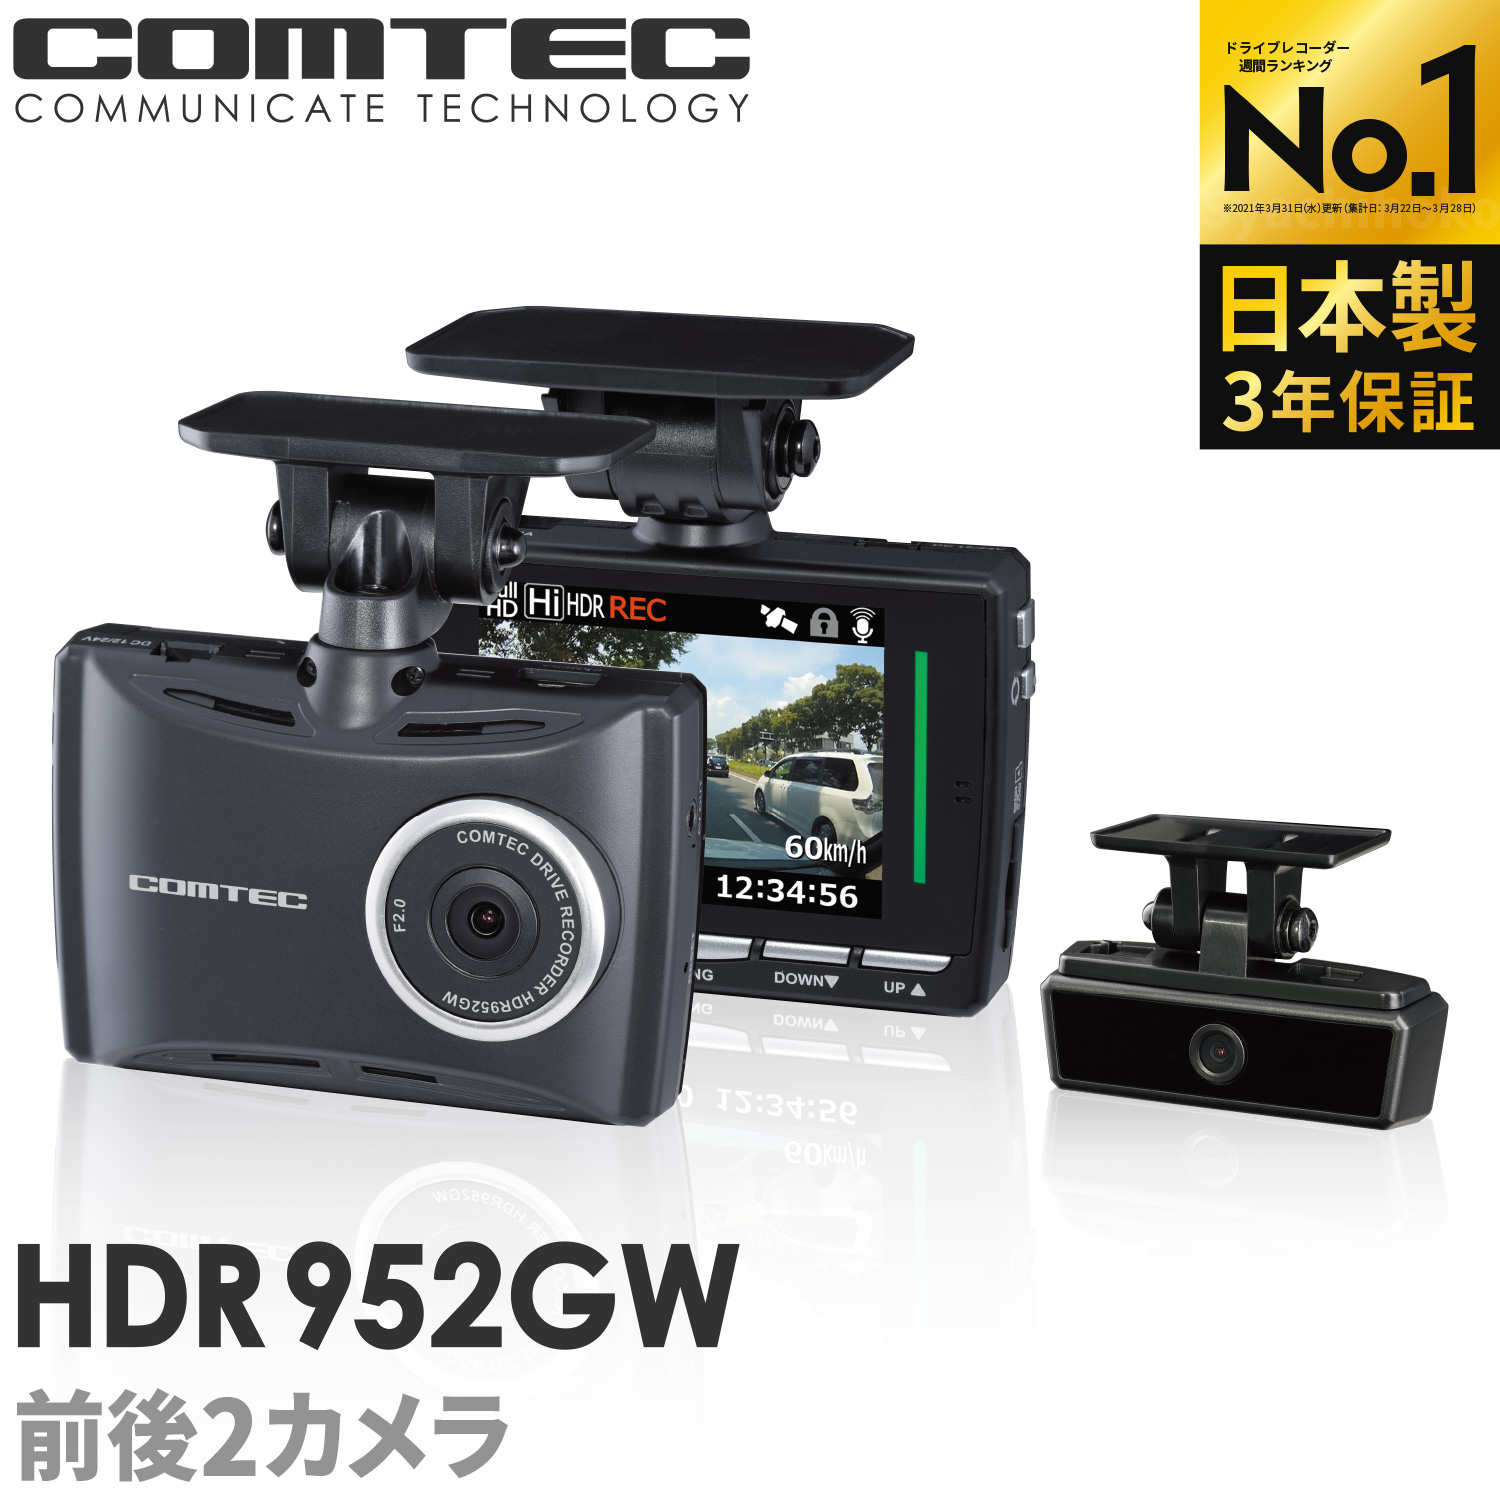 ドライブレコーダーランキング1位 日本製 3年保証 前後2カメラ ドライブレコーダー コムテック HDR952GW ノイズ対策済 フルHD高画質 常時  衝撃録画 GPS搭載 駐車監視対応 2.7インチ液晶 ドラレコ | シャチホコストア